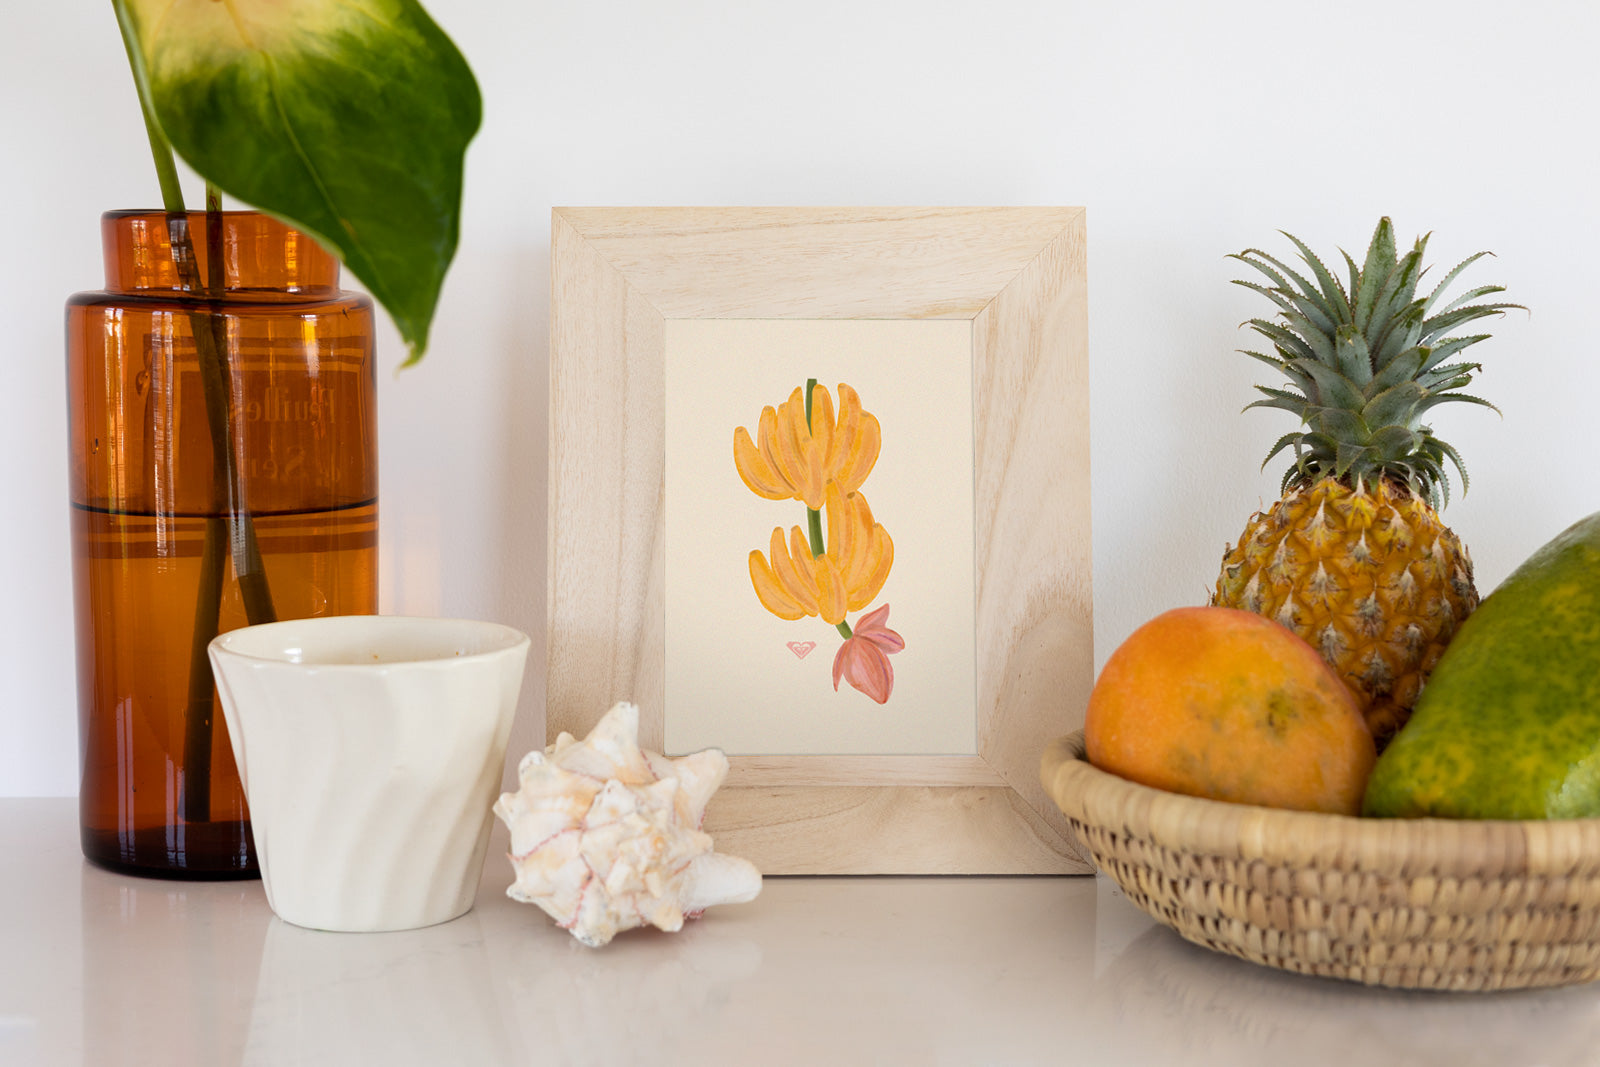 Printable Tropical Fruit Art - Bananas